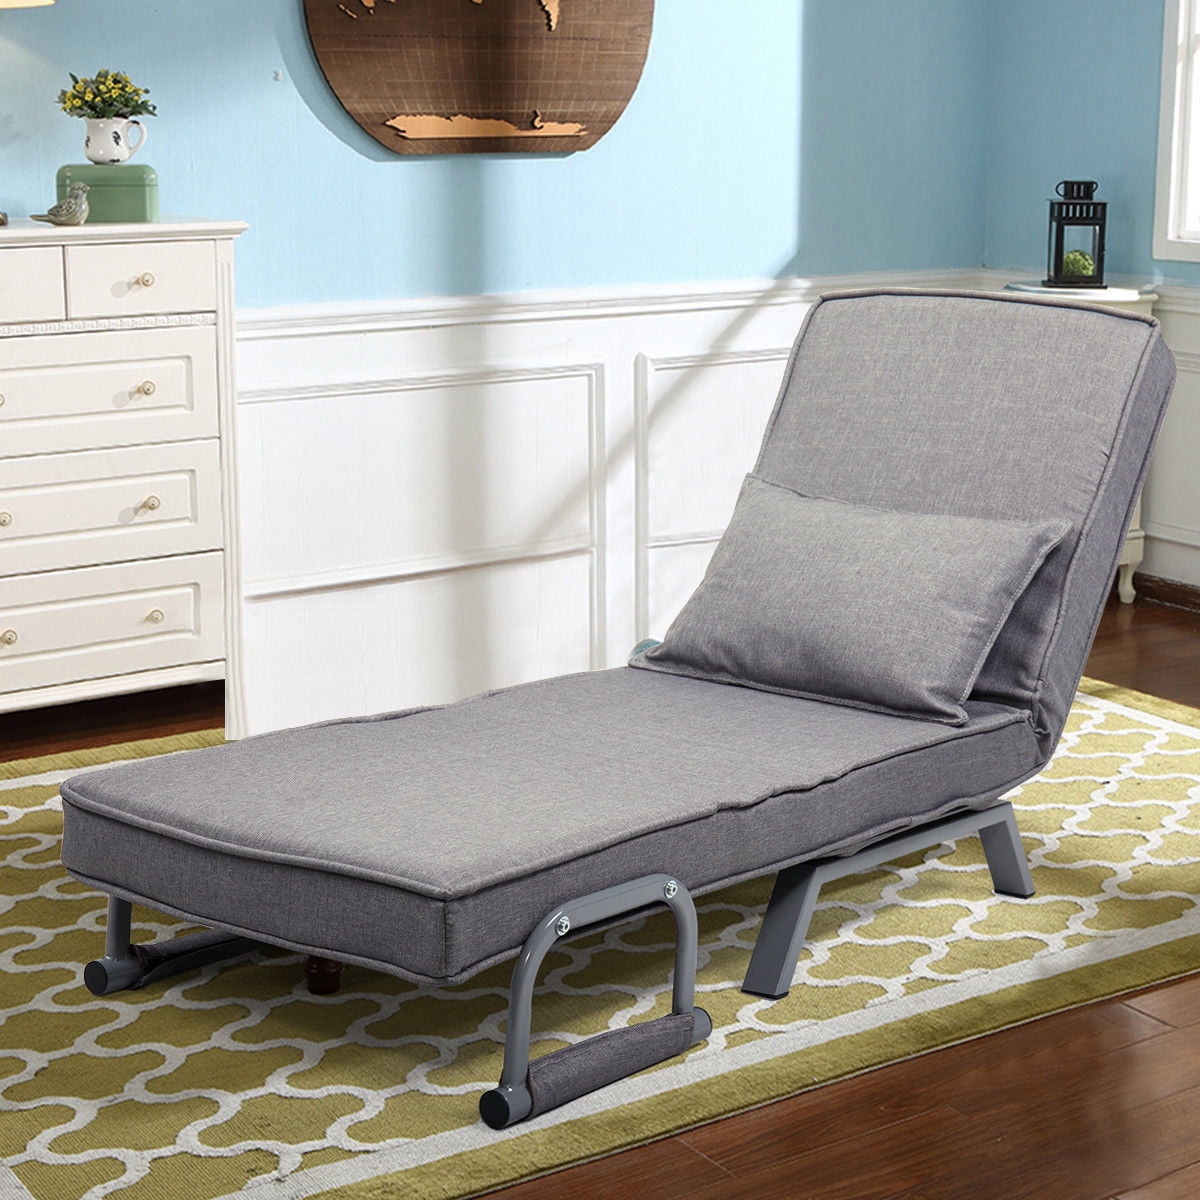 Veryke Sofa Bed, Floor Chair, Recliner Chair, Adjustable